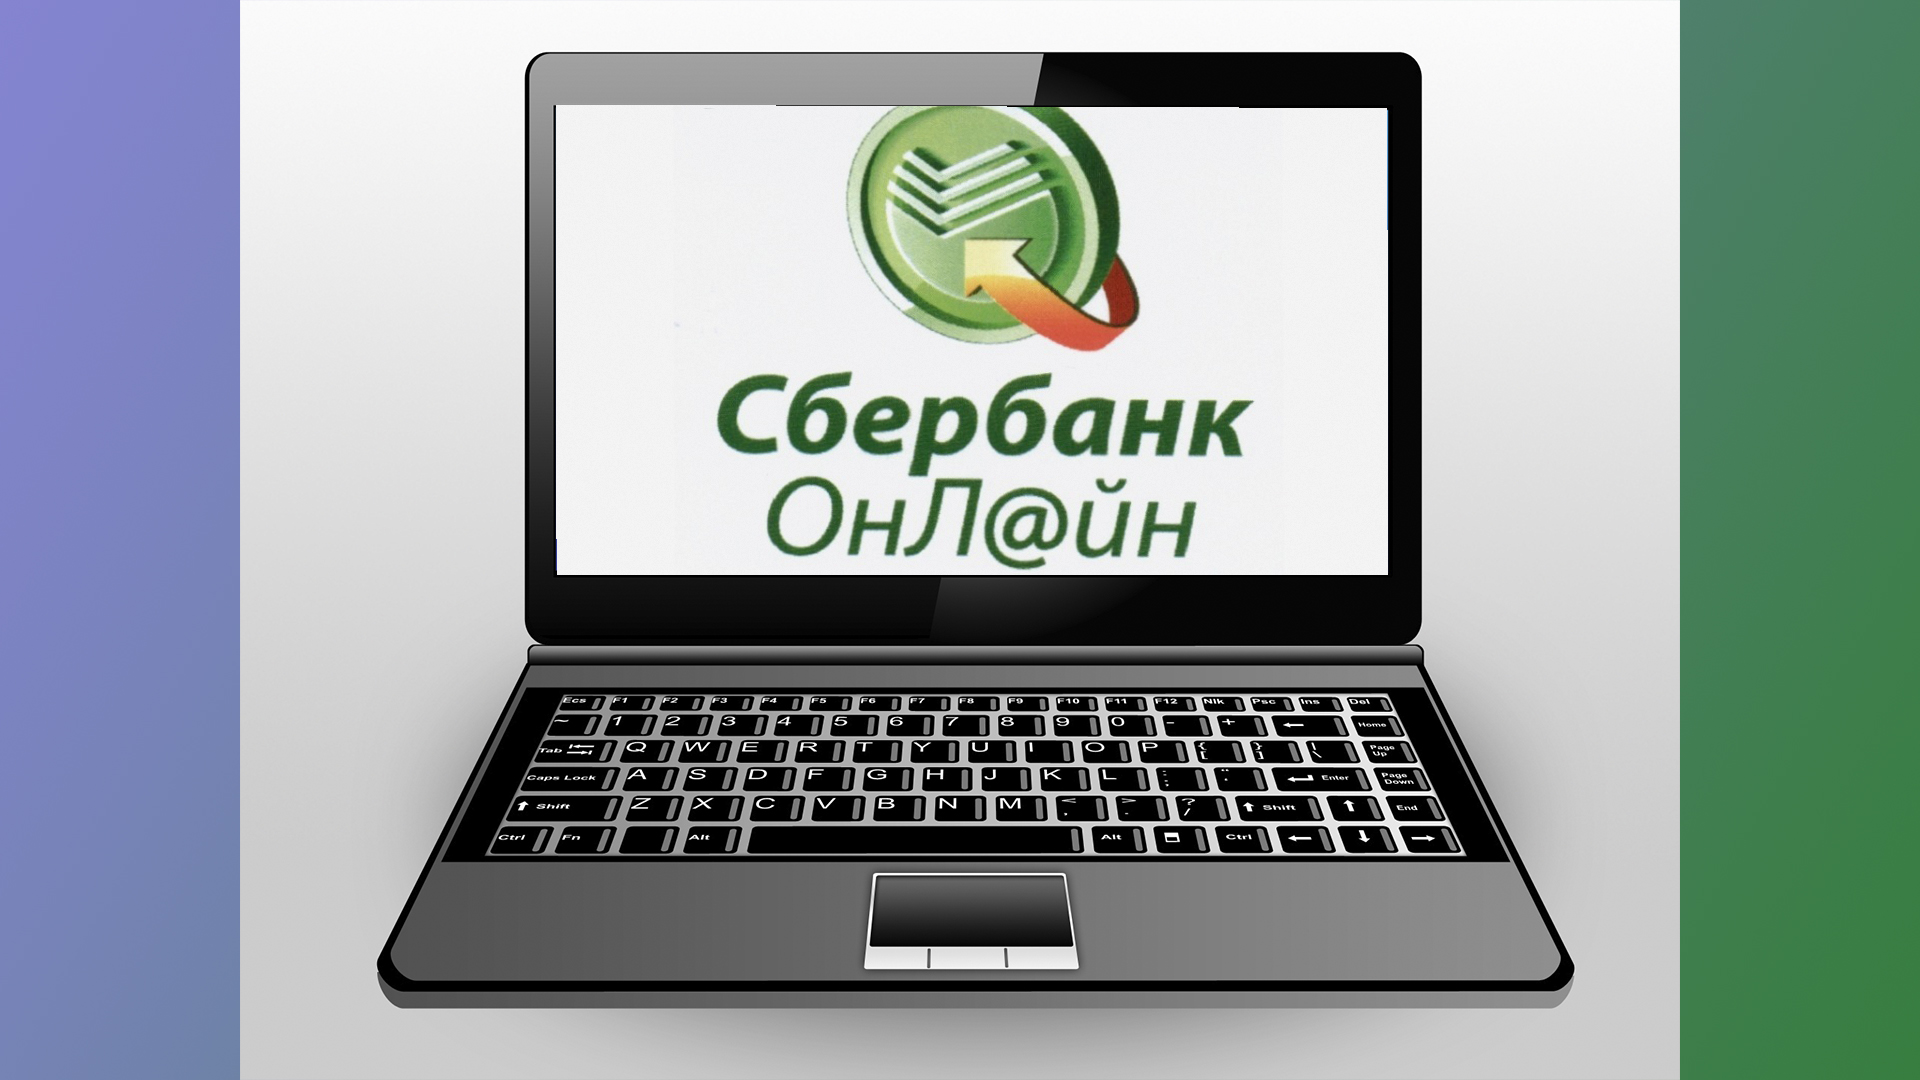 Сбербанк онлайн удобный сервис оплаты услуг и переводов денежных средств.